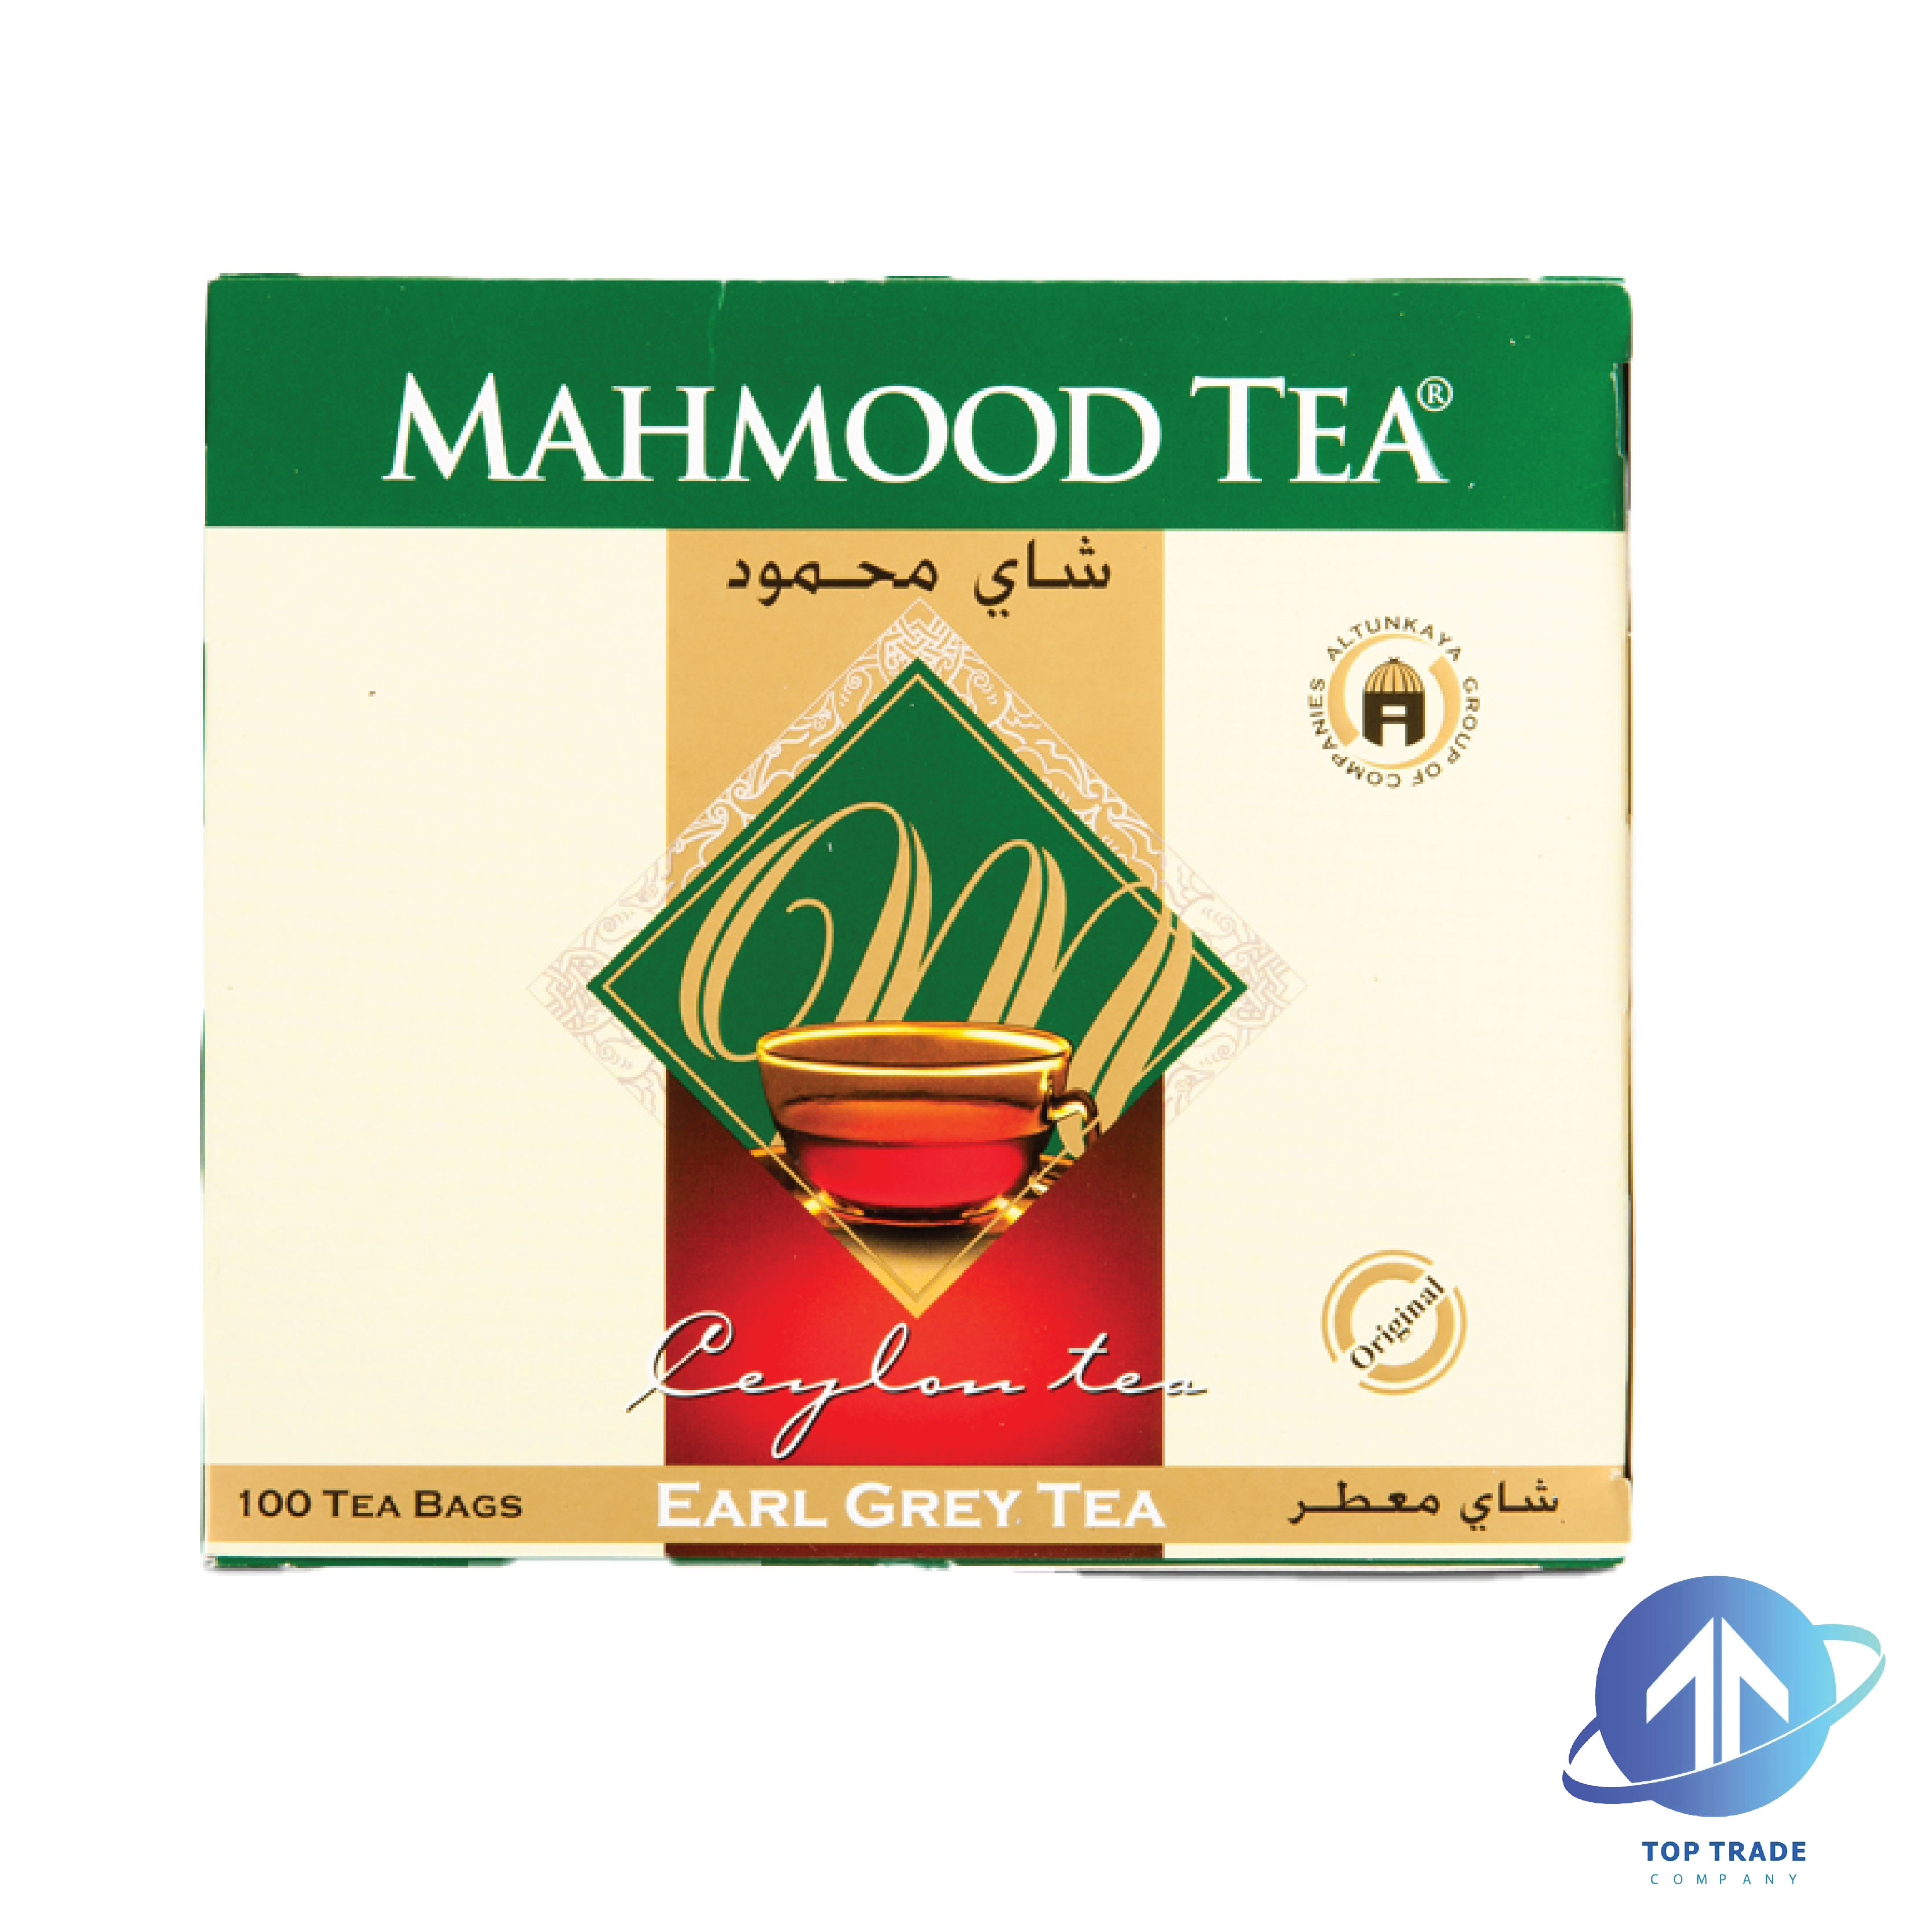 Mahmood Earl Grey Tea *100 